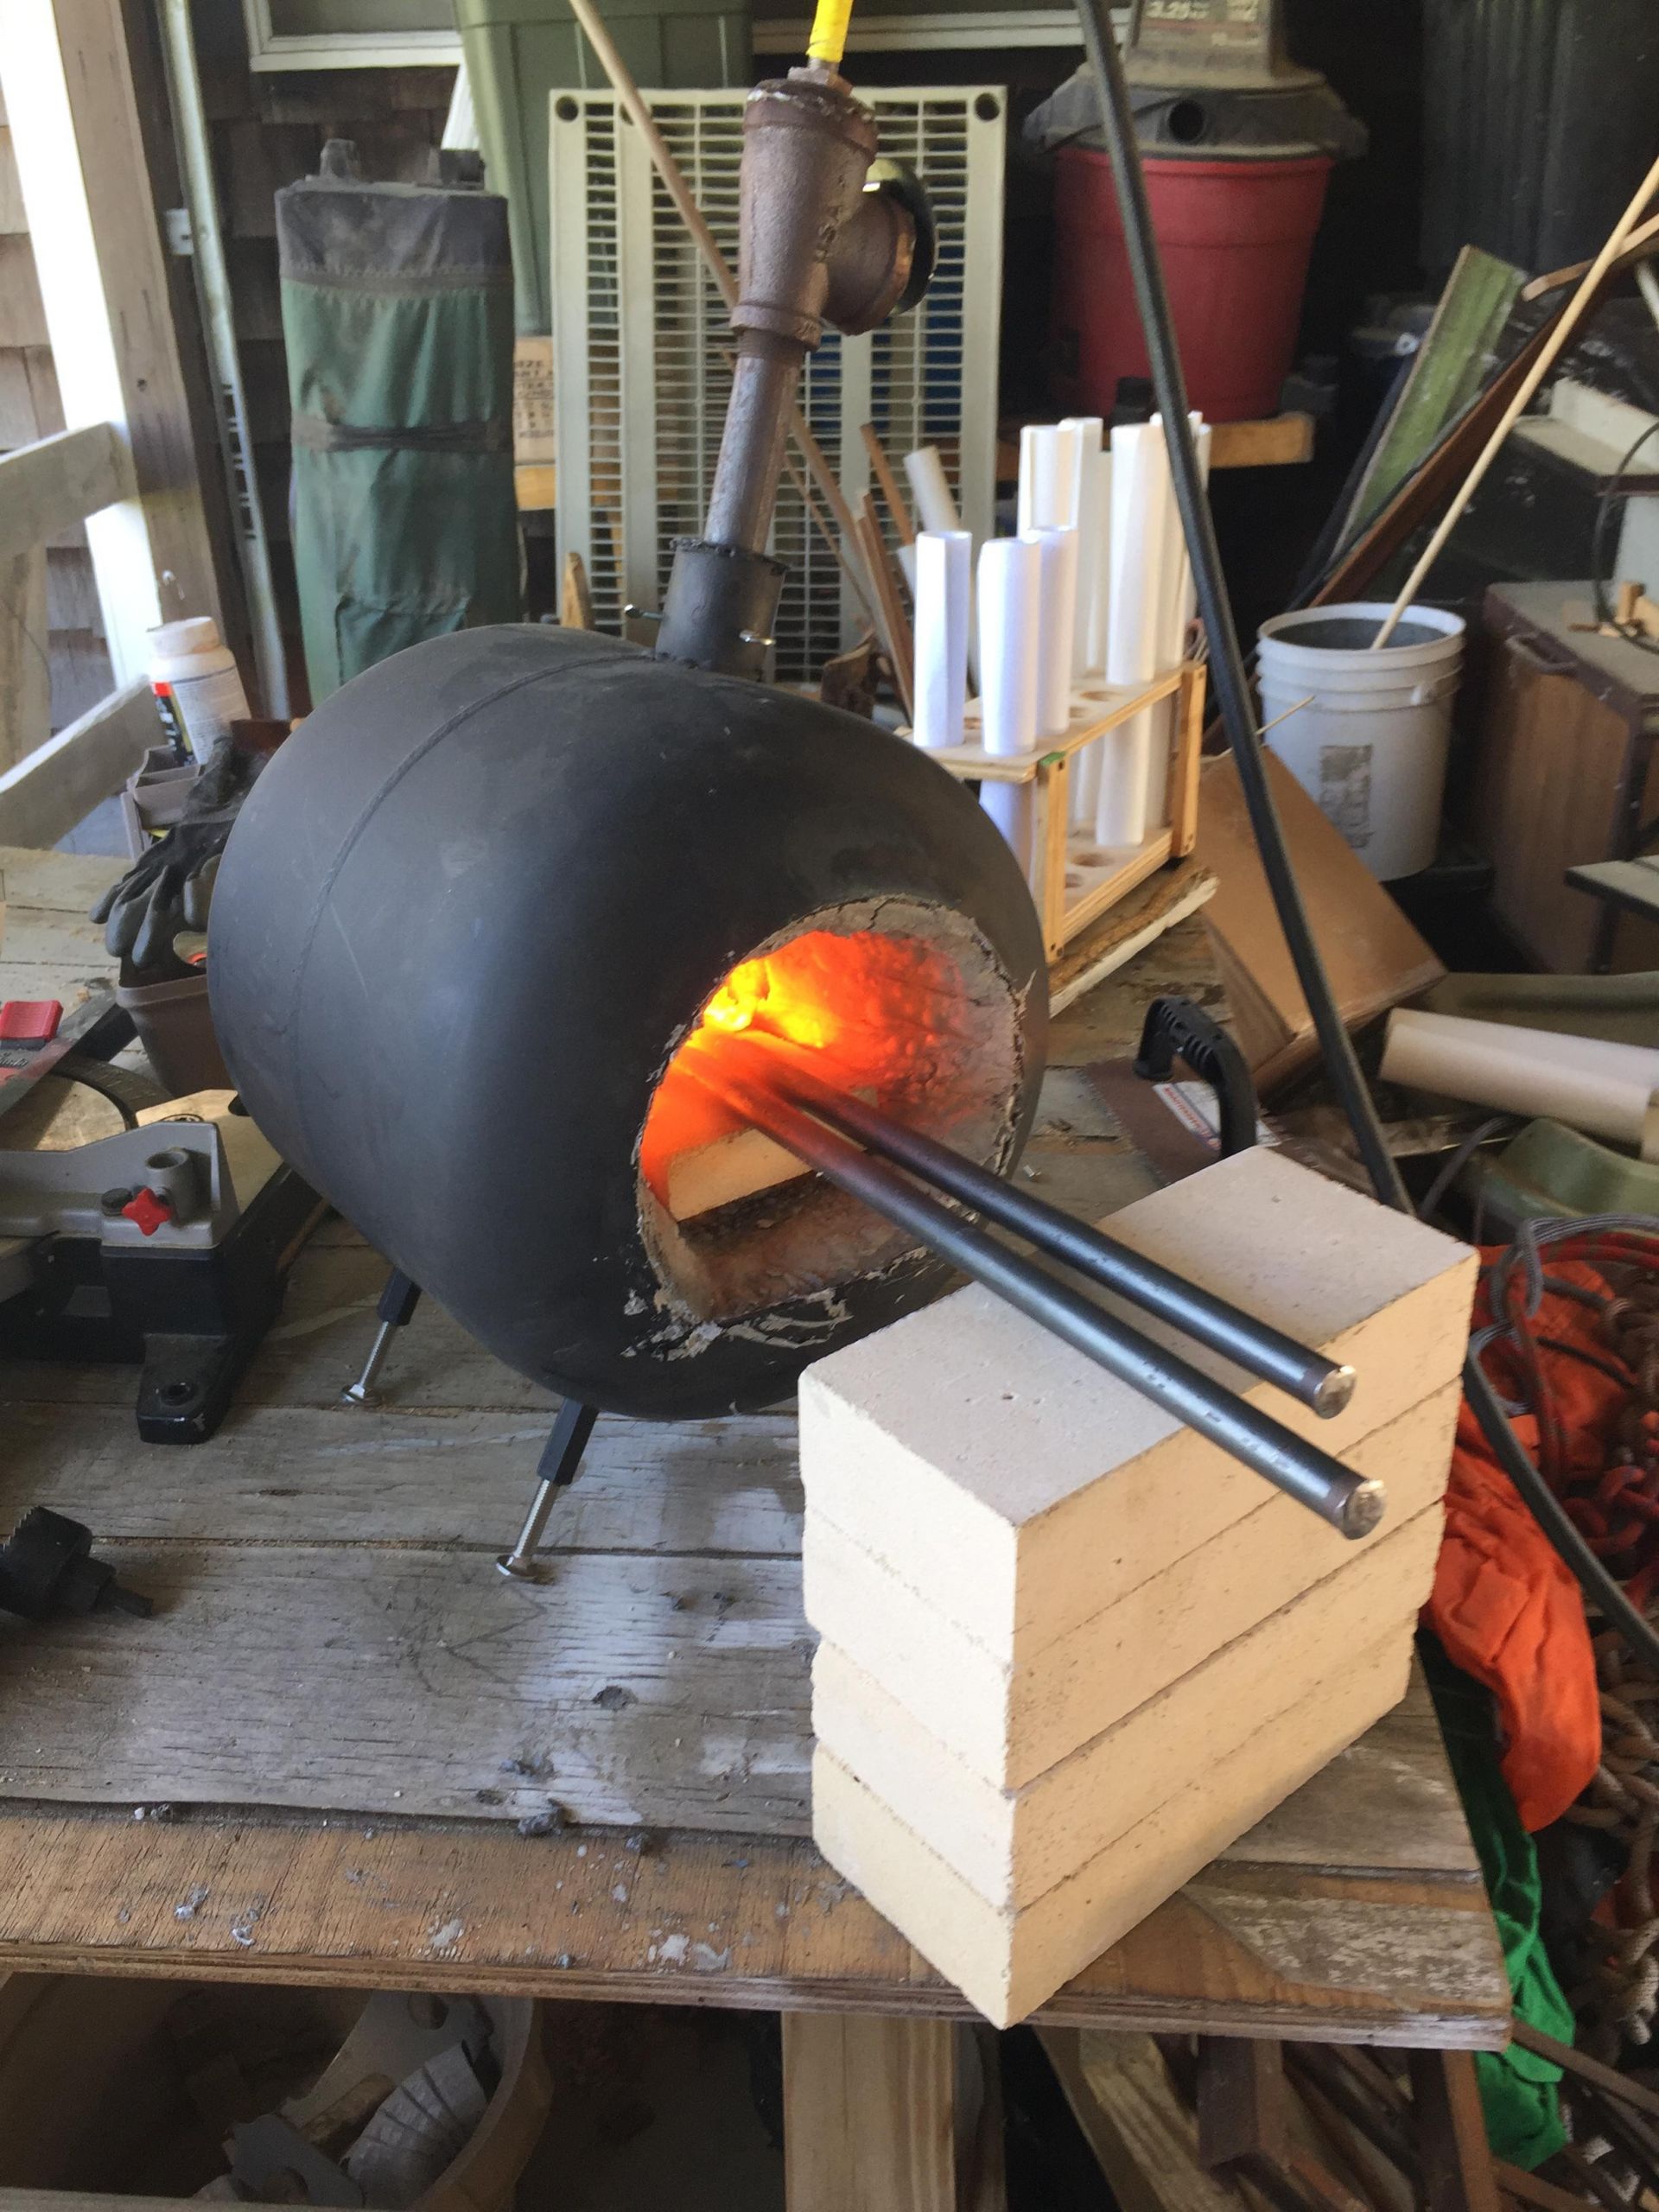 DIY Forge Burner Plans
 12 Homemade Propane Forge For Blacksmithing – The Self